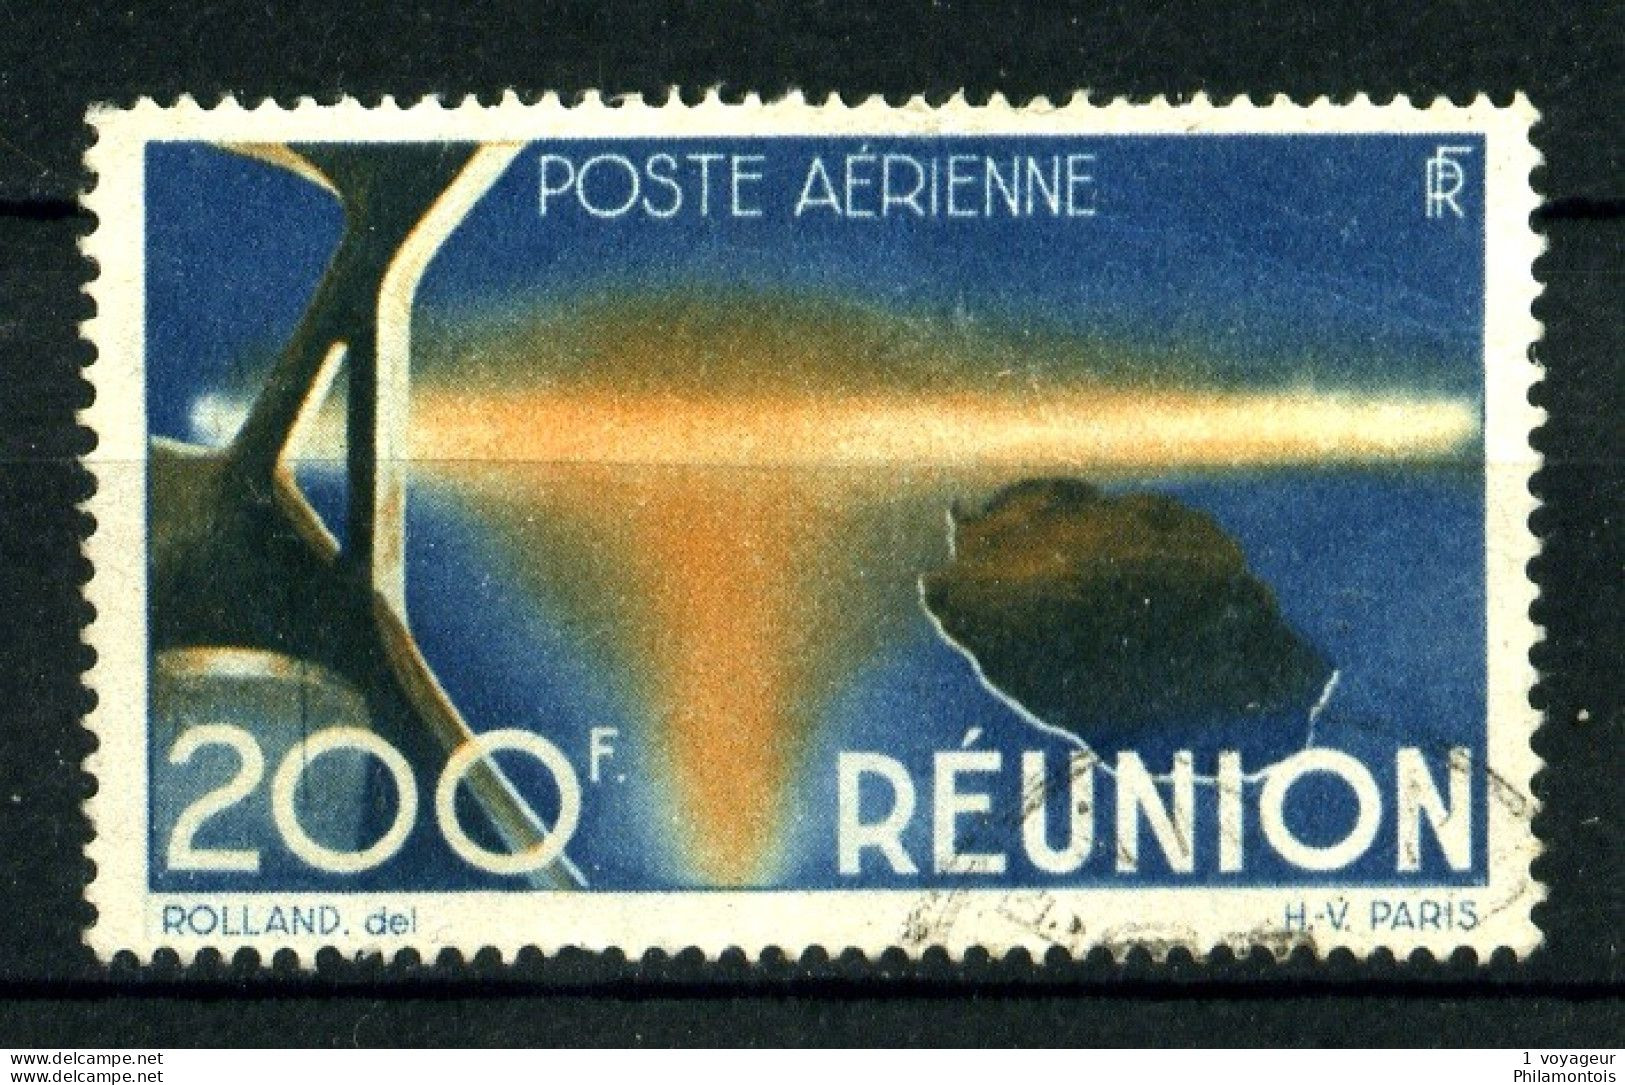 REUNION - PA 44 - 200F Bleu Et Orange - Oblitéré  - Très Beau - Aéreo